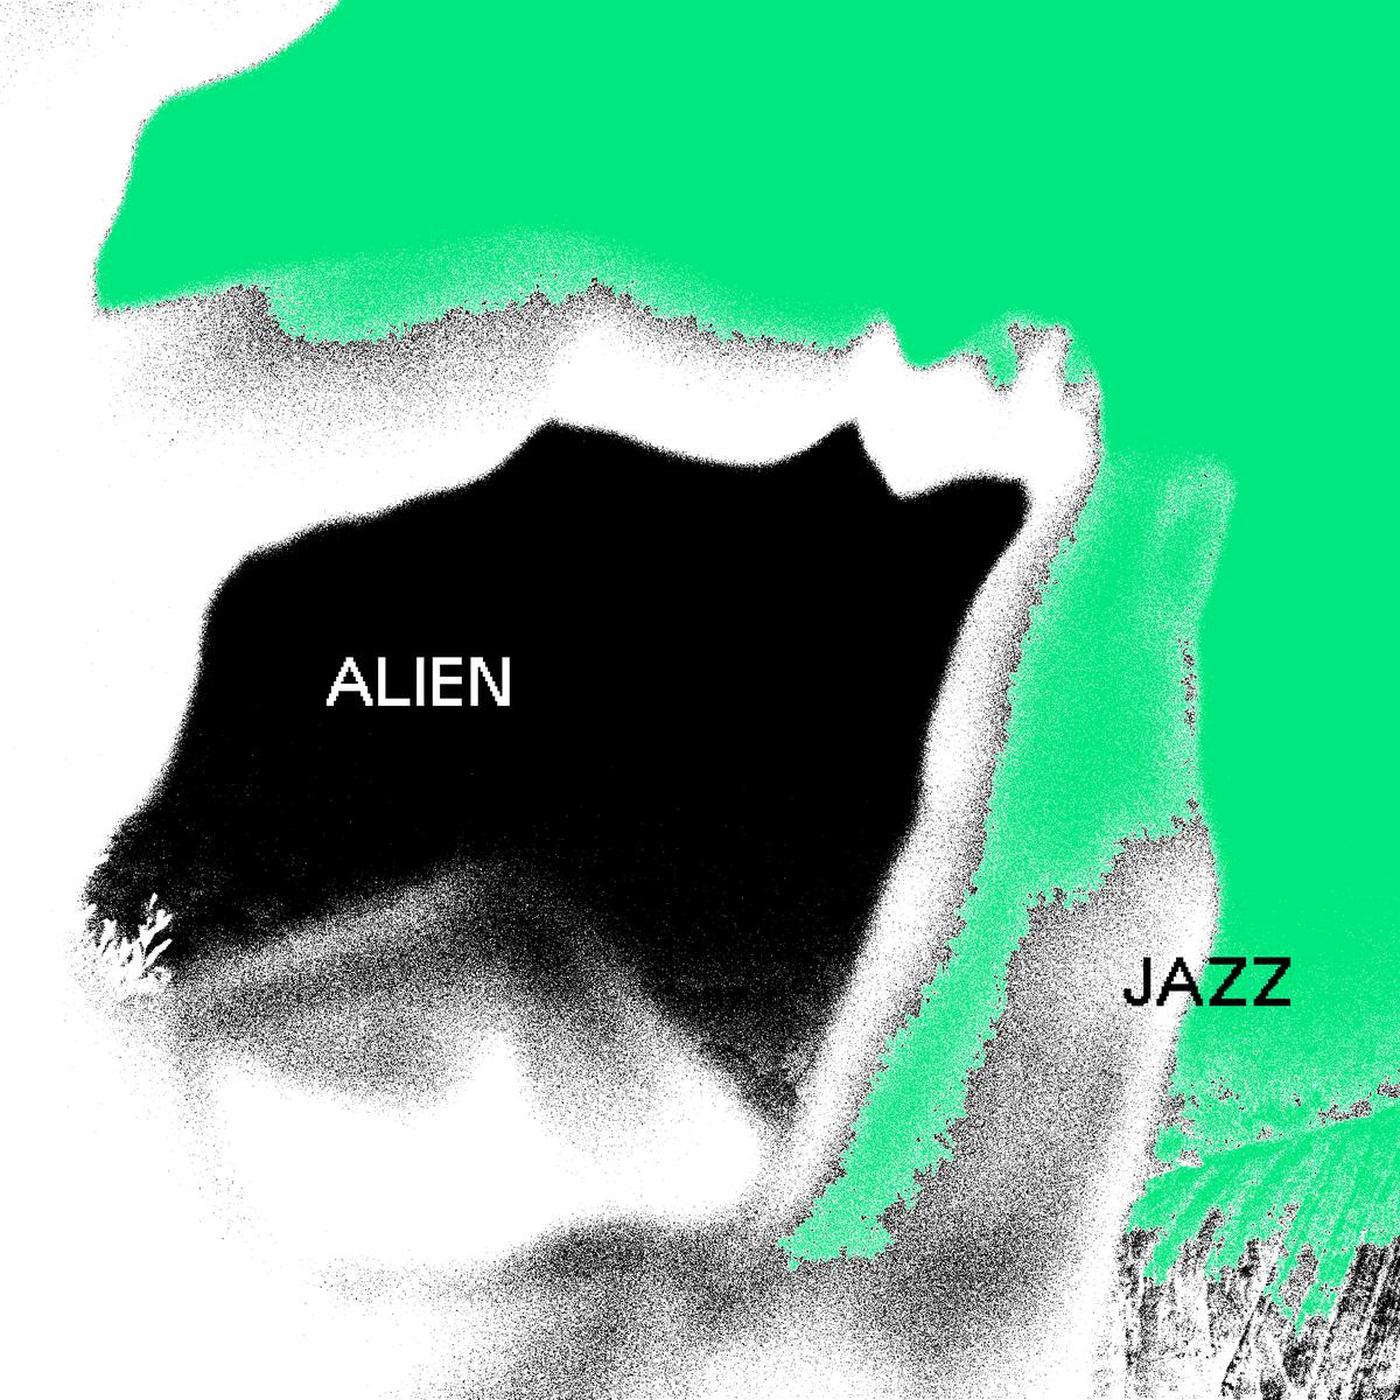 ['Focus404 ↝ Alien Jazz']